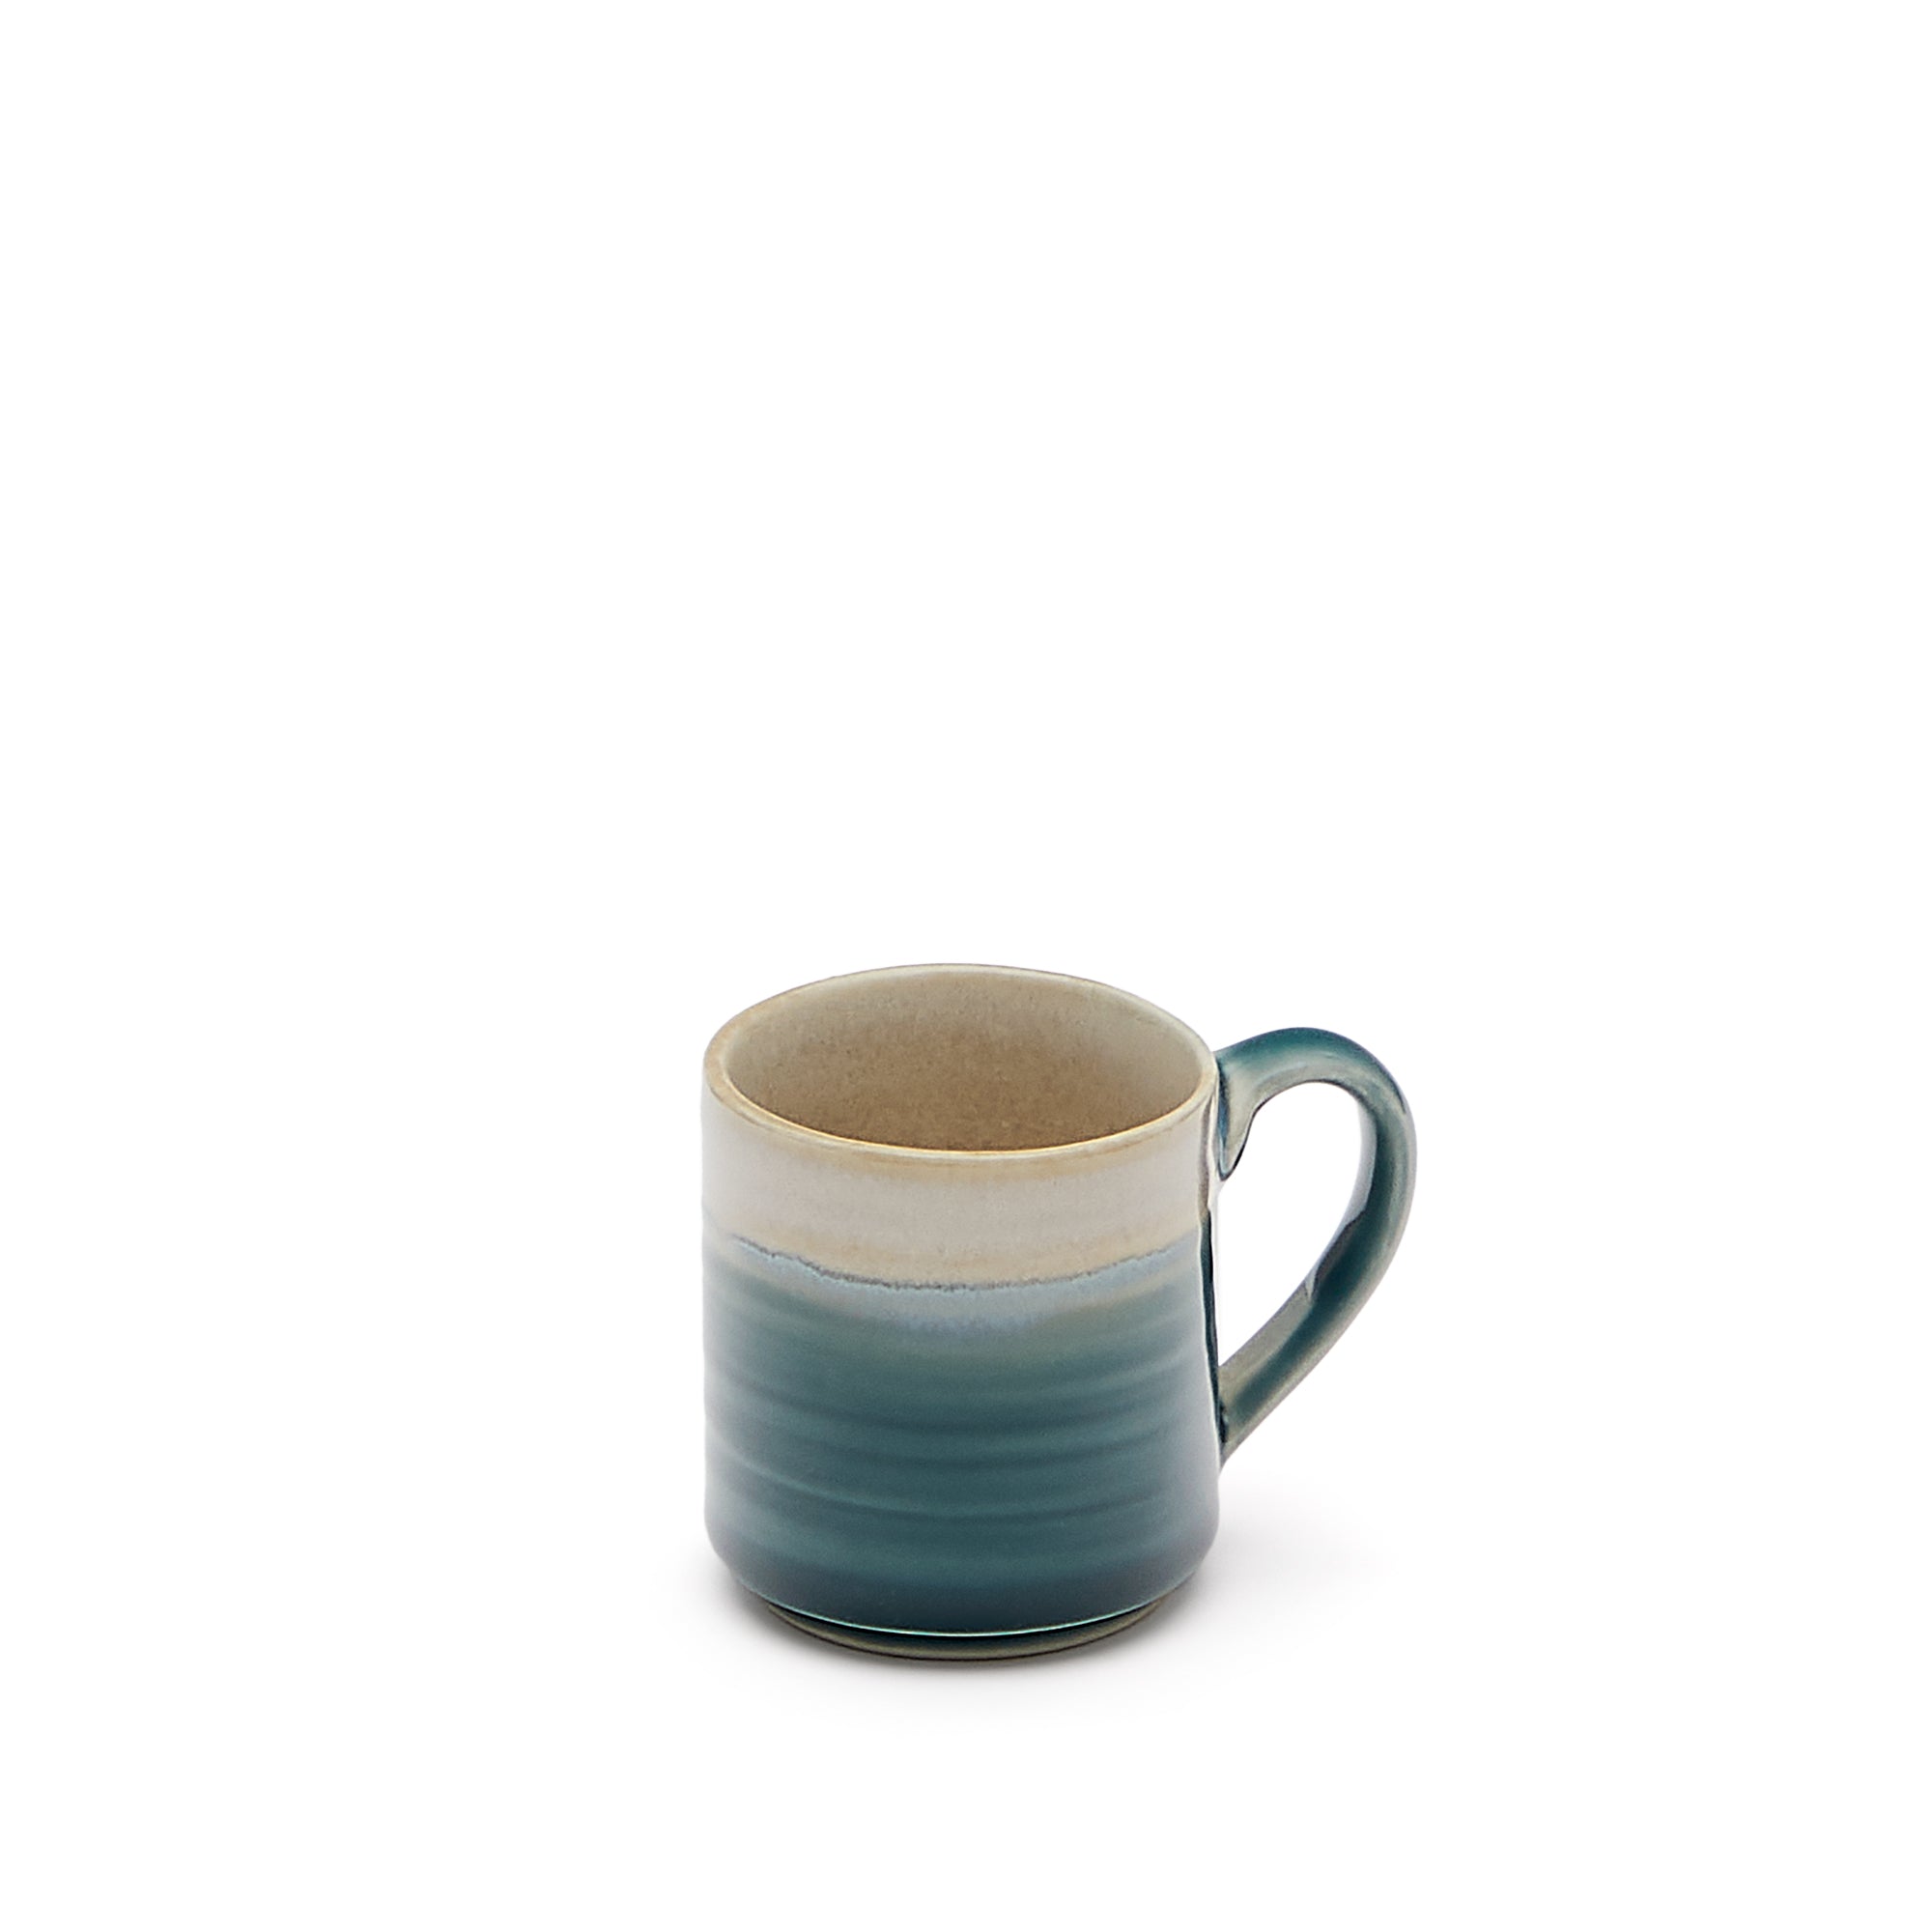 Sanet small, blue and white, ceramic mug